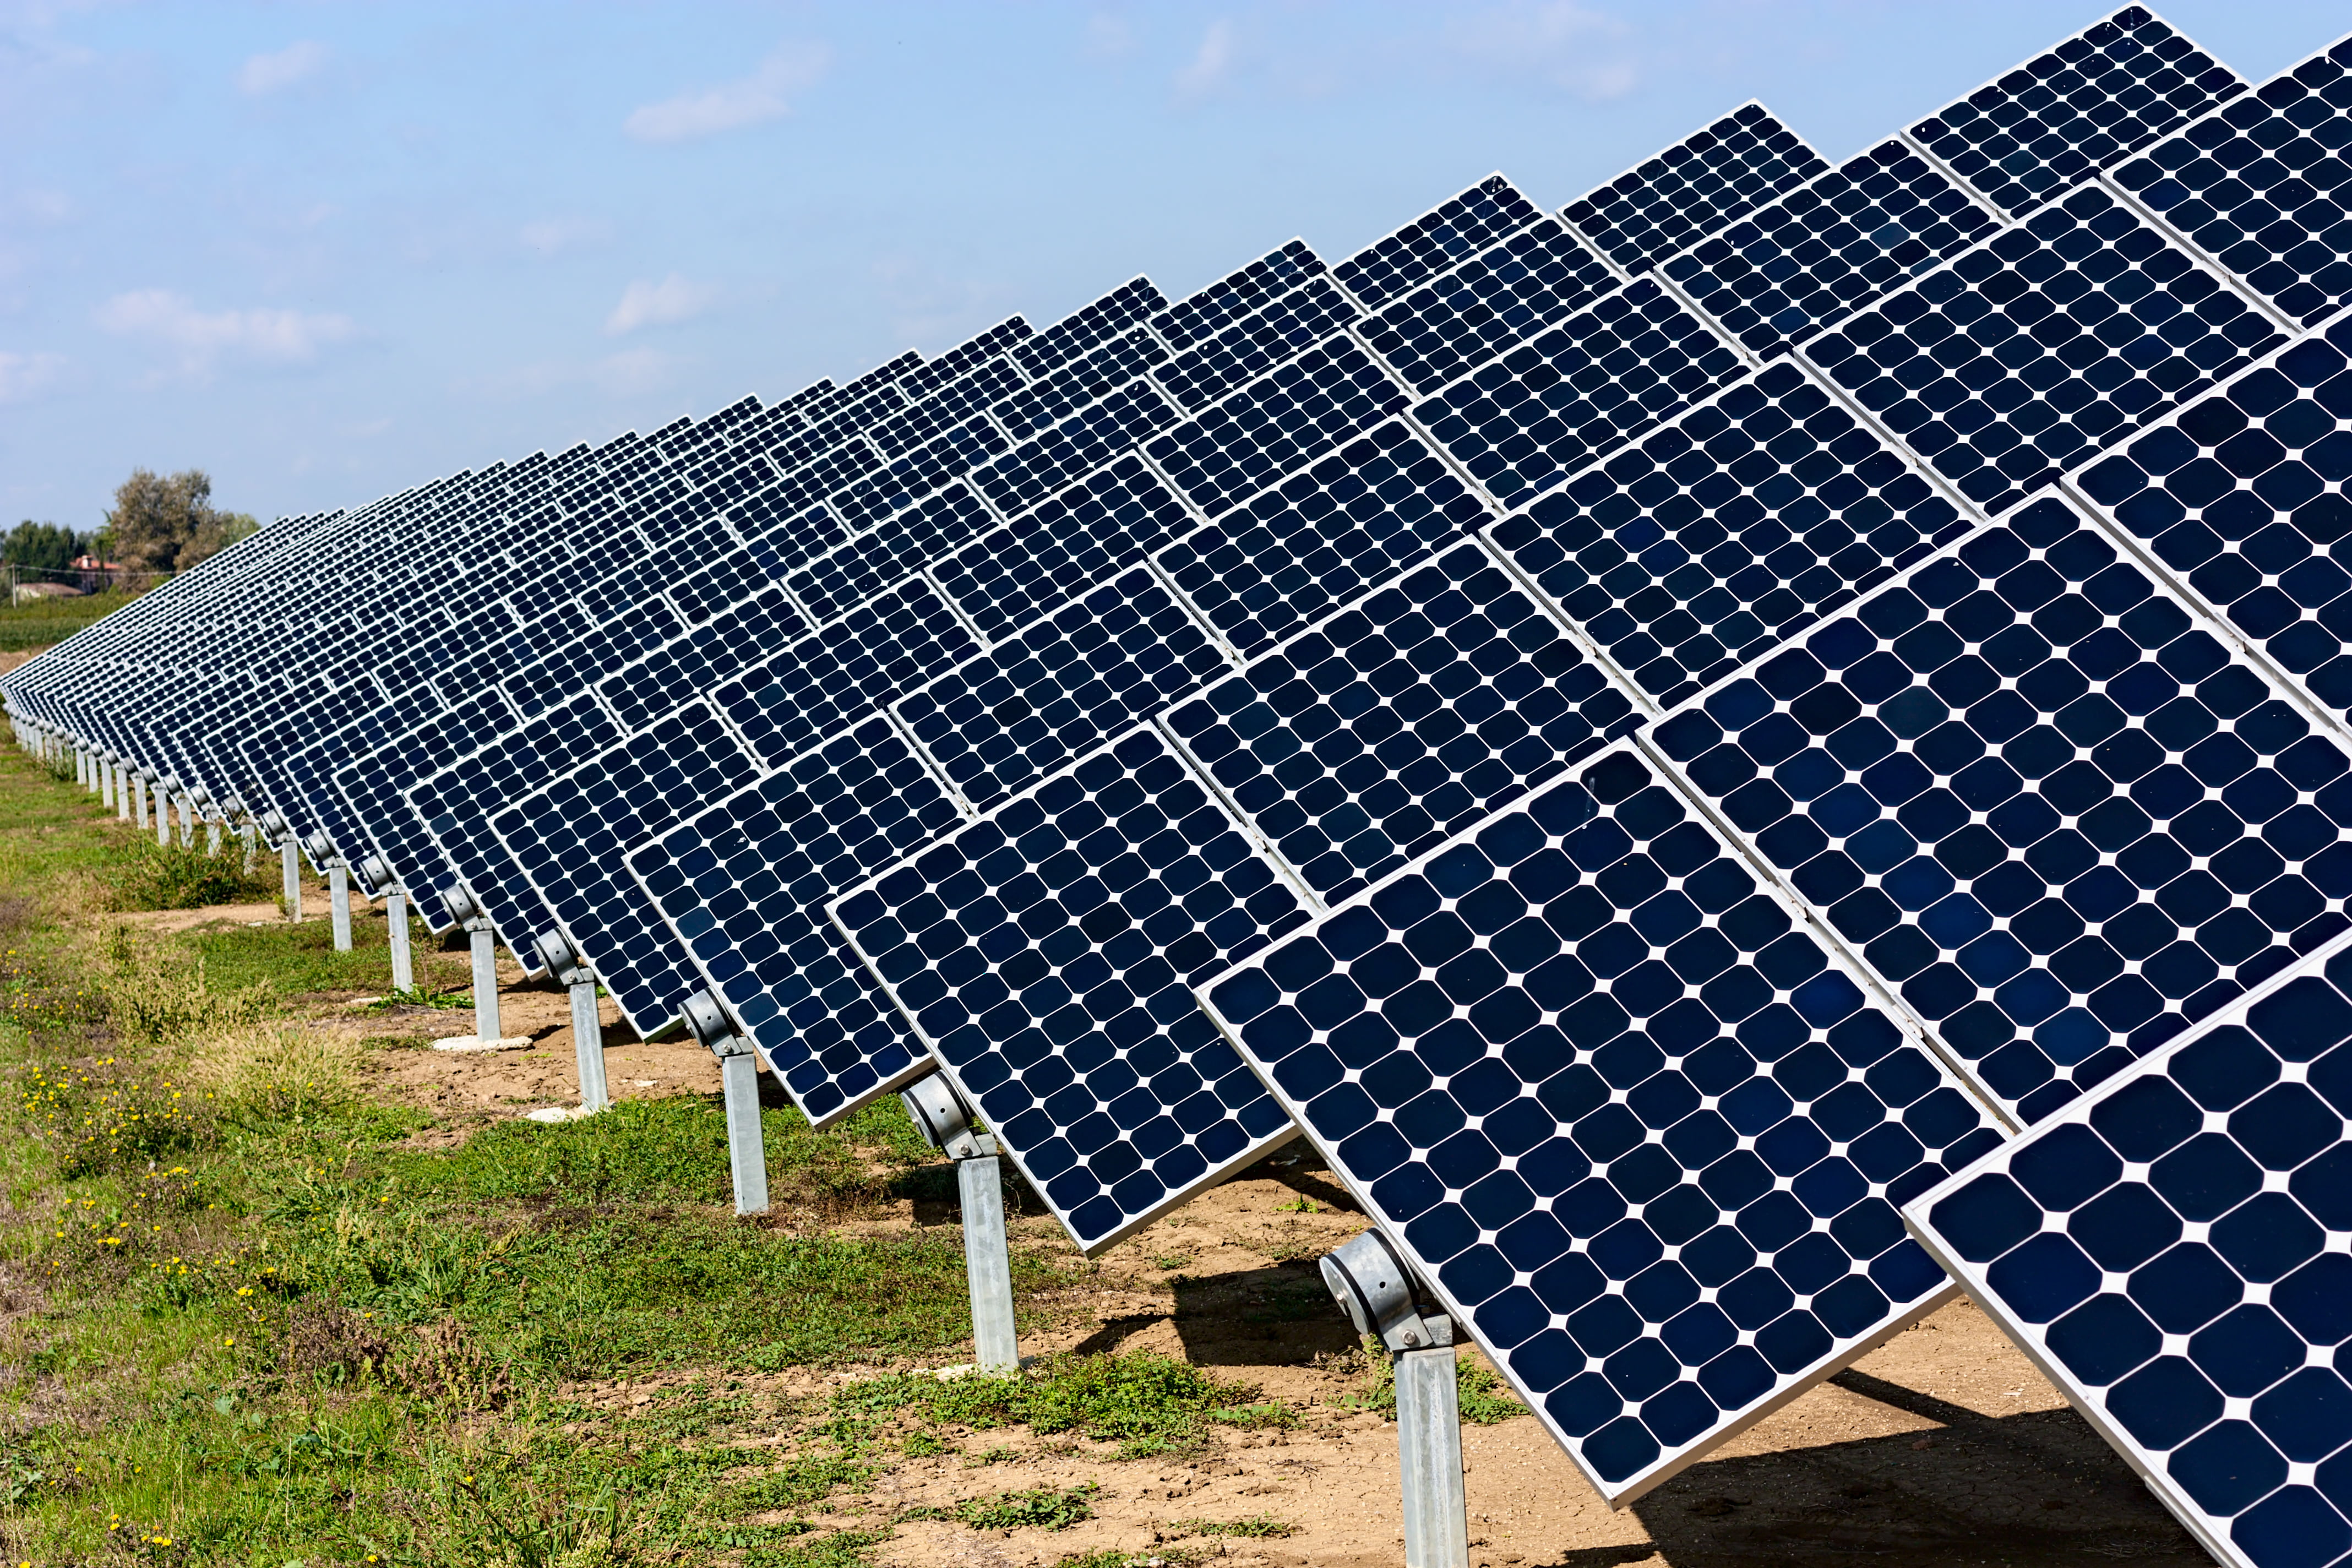  energy ledger power firm green japanese deal 